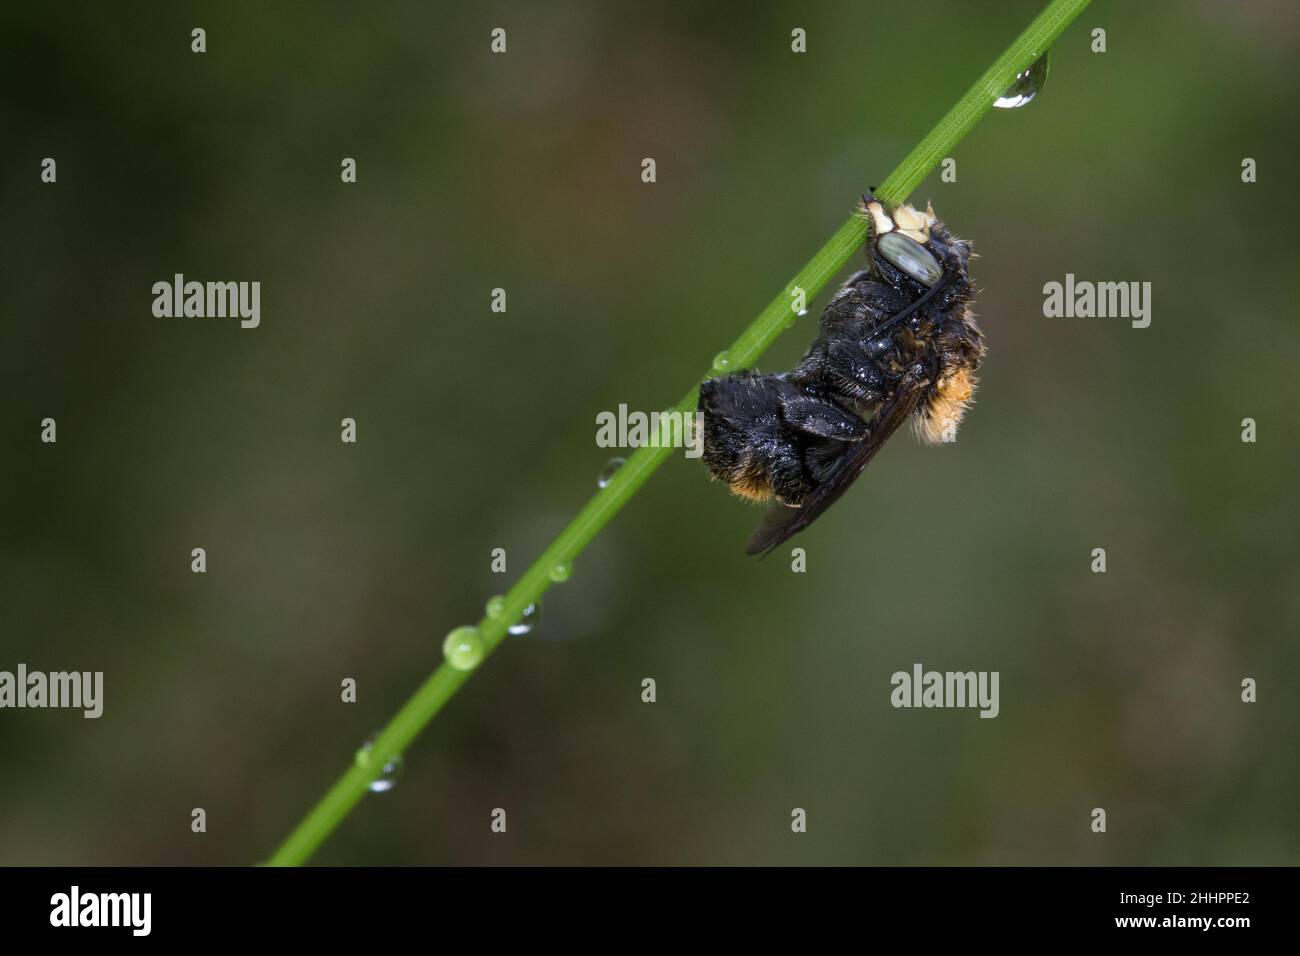 Große Harzbiene hält sich mit Mandibeln am Grashalm fest Foto Stock